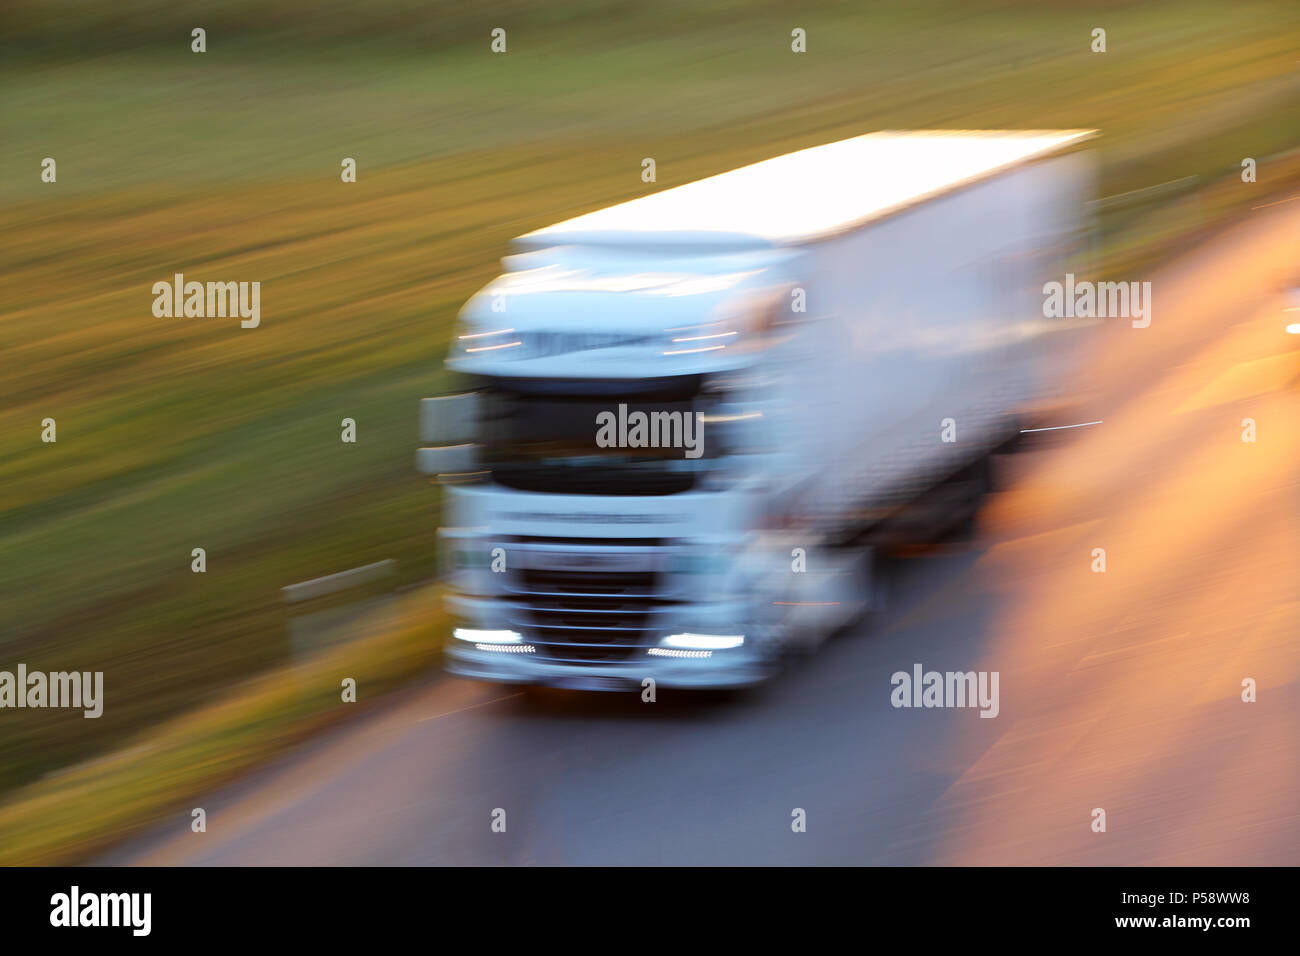 Autobahn-Transport mit PKW und LKW Stockfoto